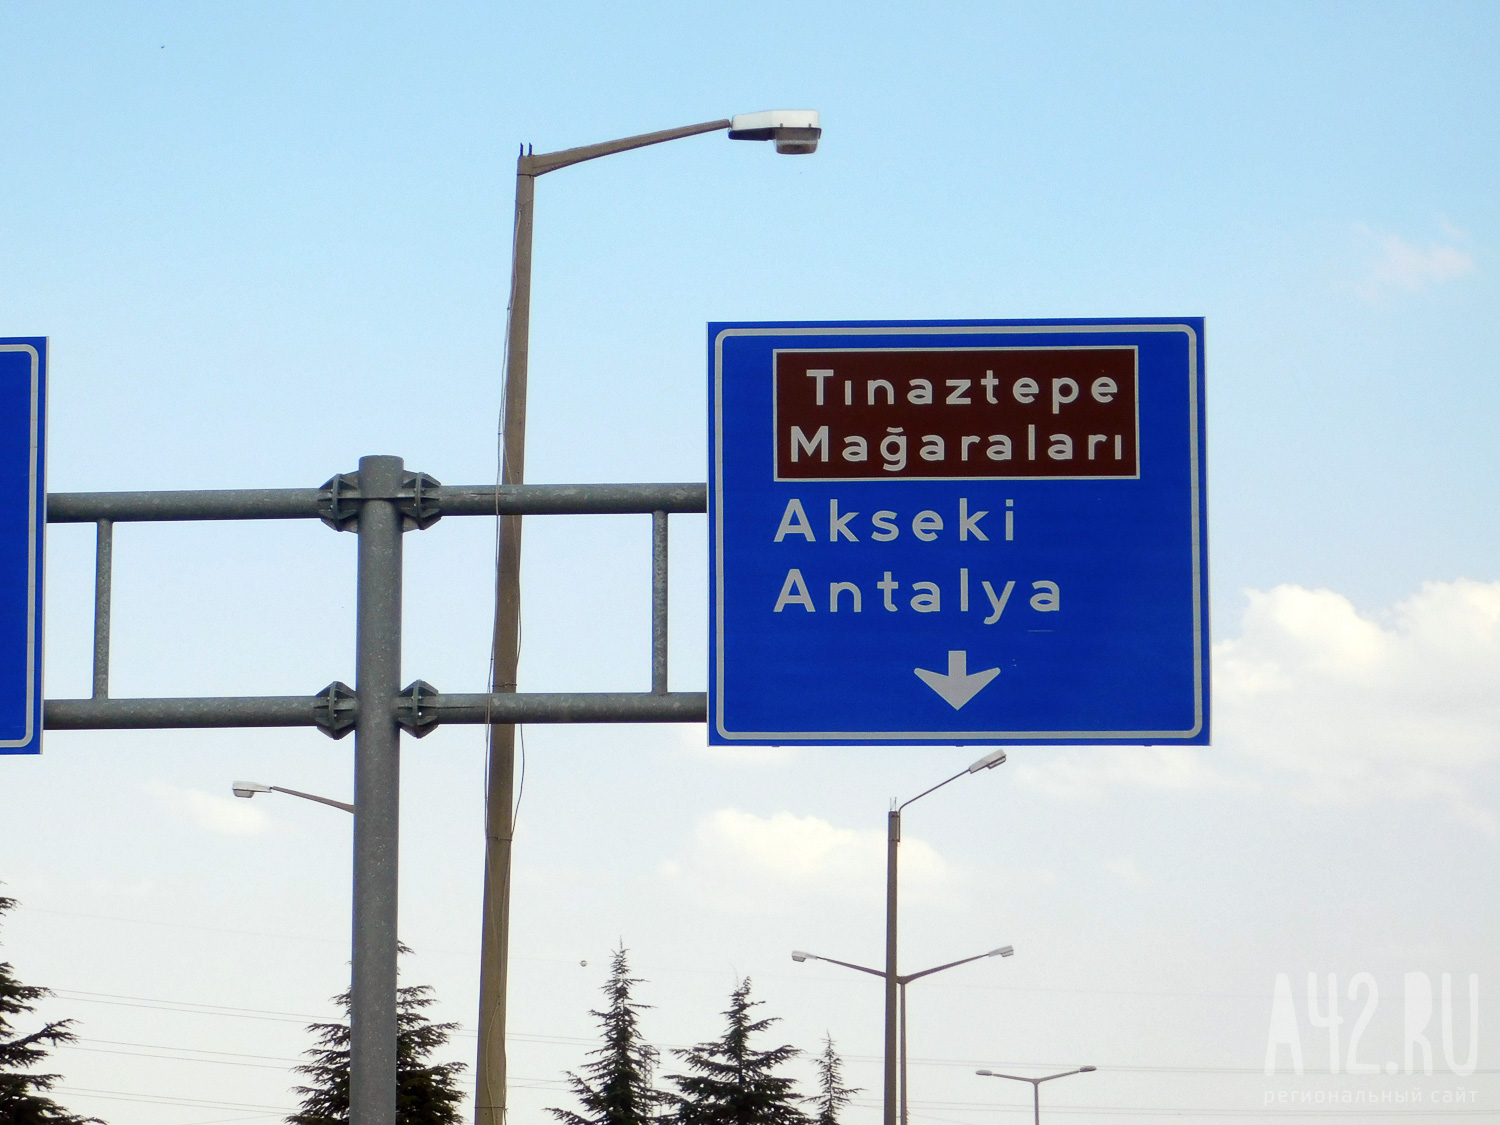 Дорога длиной 6500 км: кемеровчанин отправился на автомобиле в Турцию и обратно